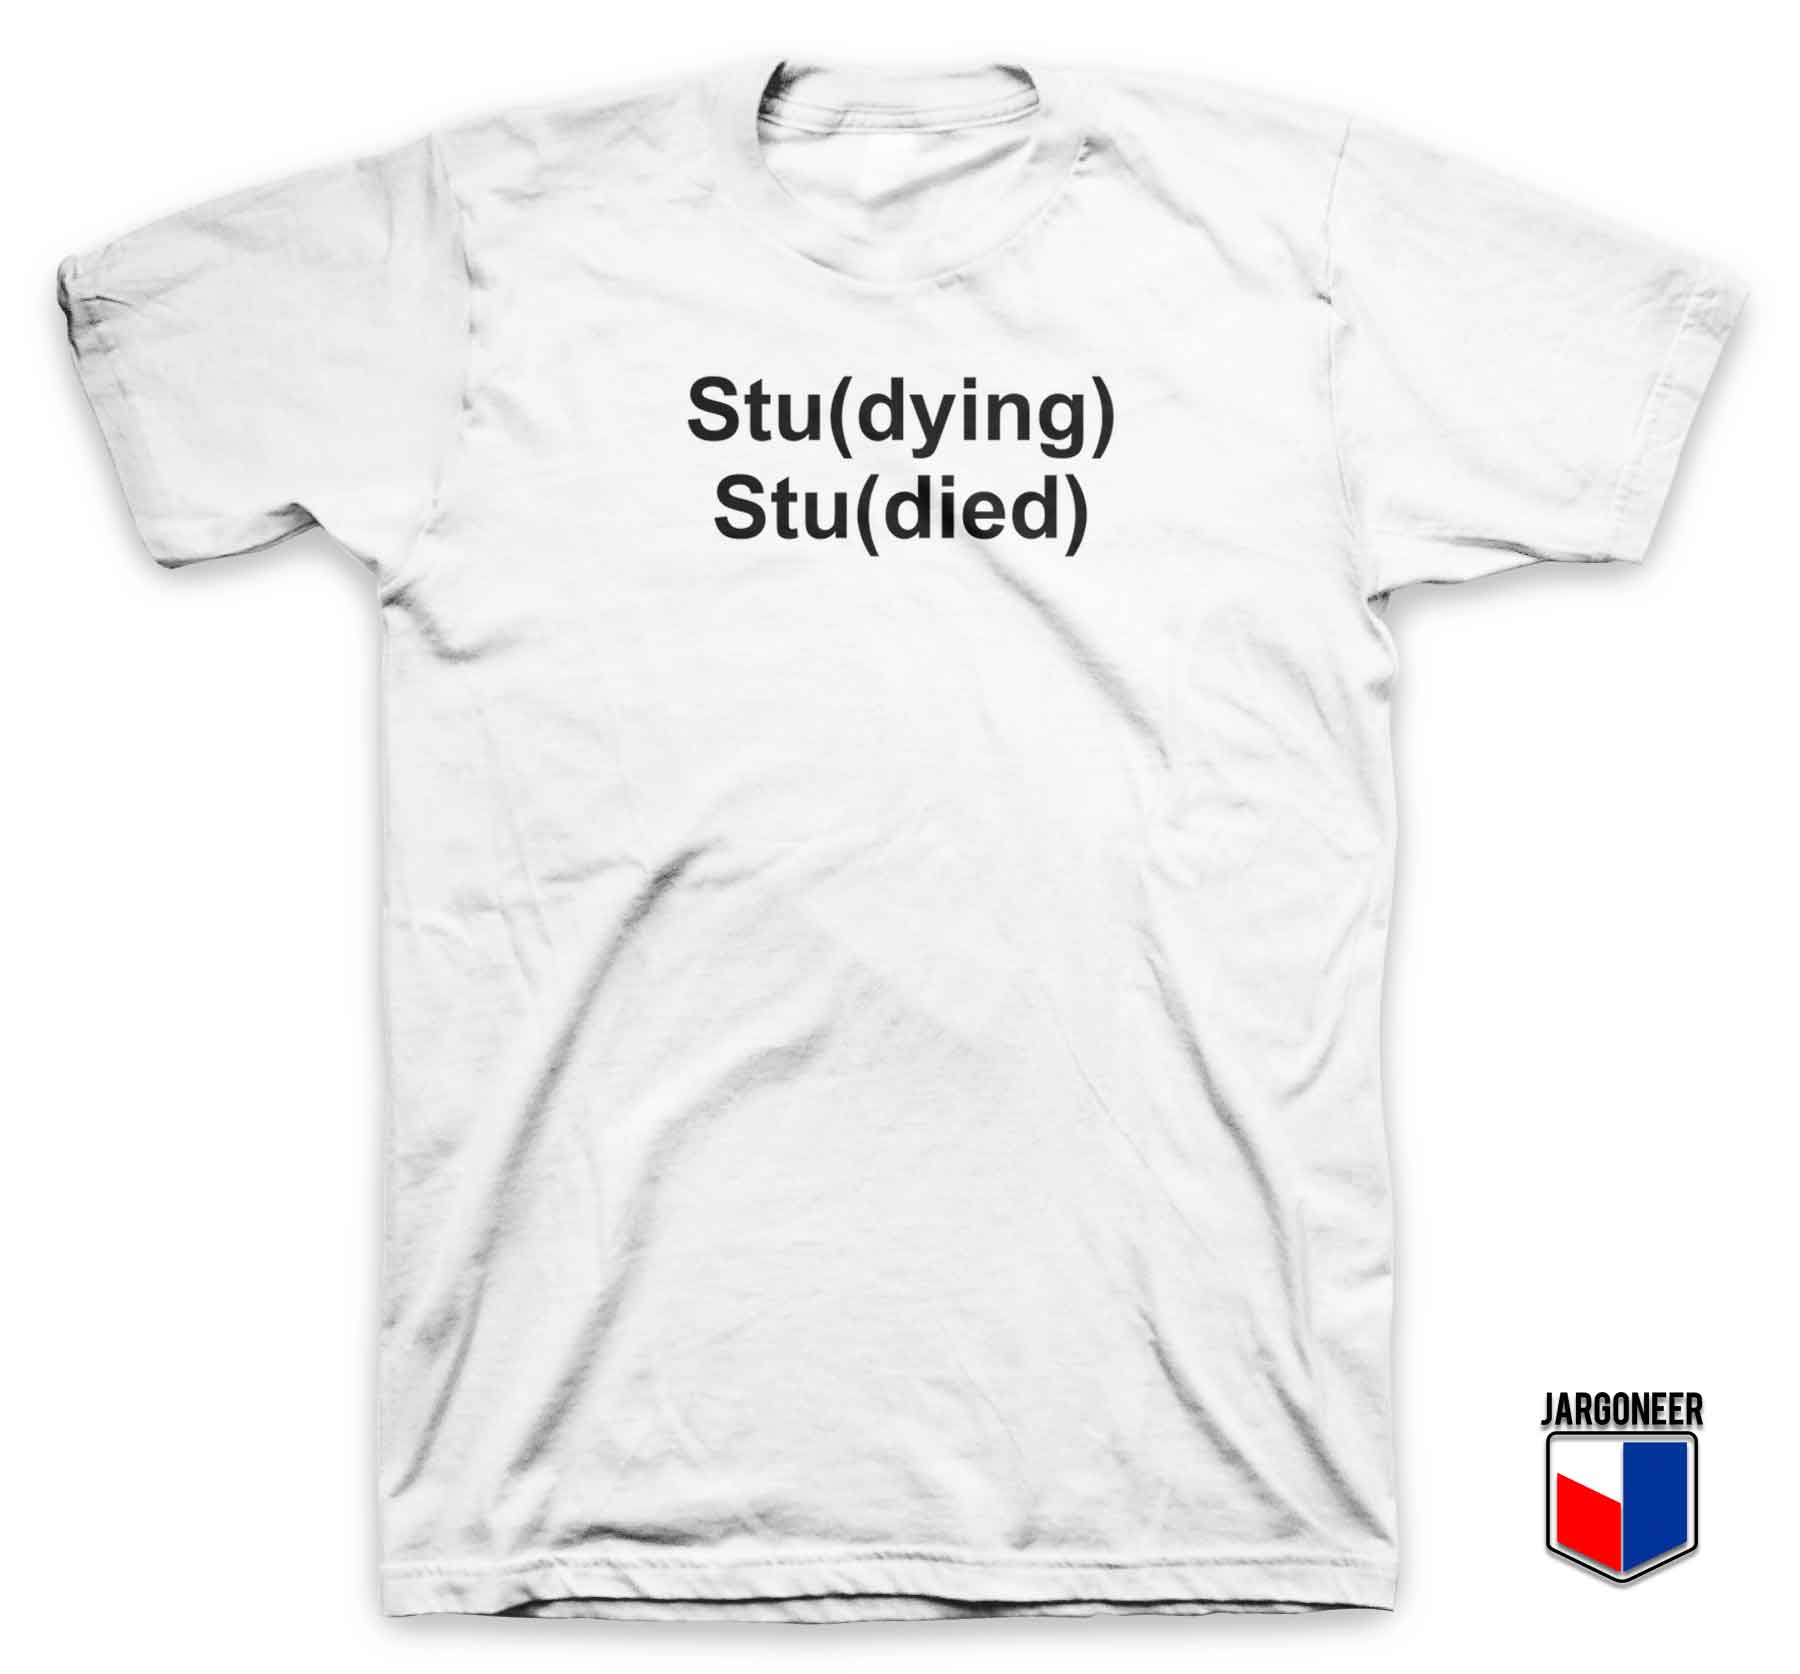 Studying Studied T Shirt - Shop Unique Graphic Cool Shirt Designs